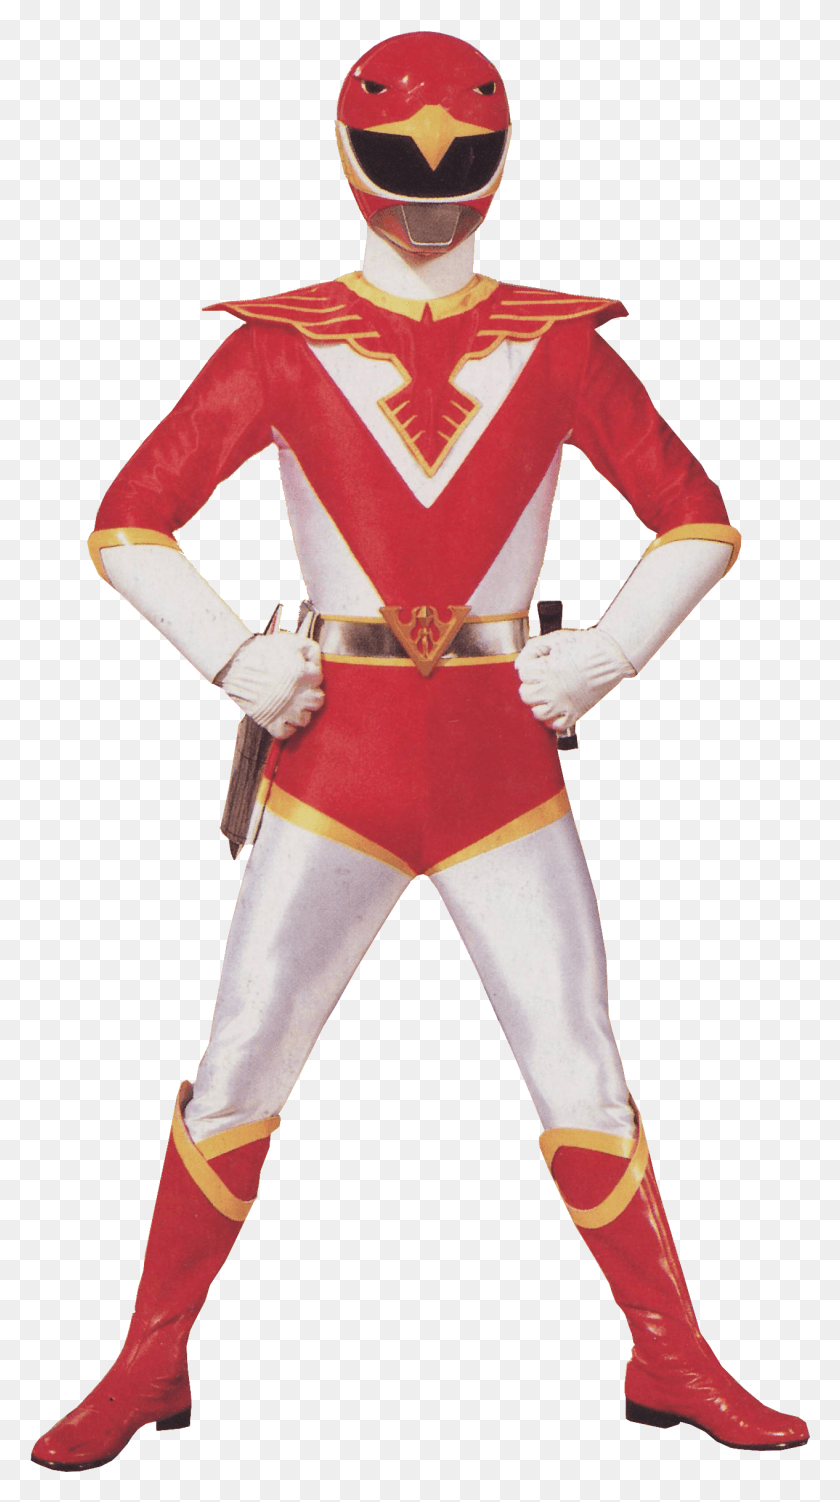 1266x2342 Красный Всегда Герой С Пылающим Чувством Справедливости Choujin Sentai Jetman Red, Костюм, Одежда, Одежда Hd Png Скачать